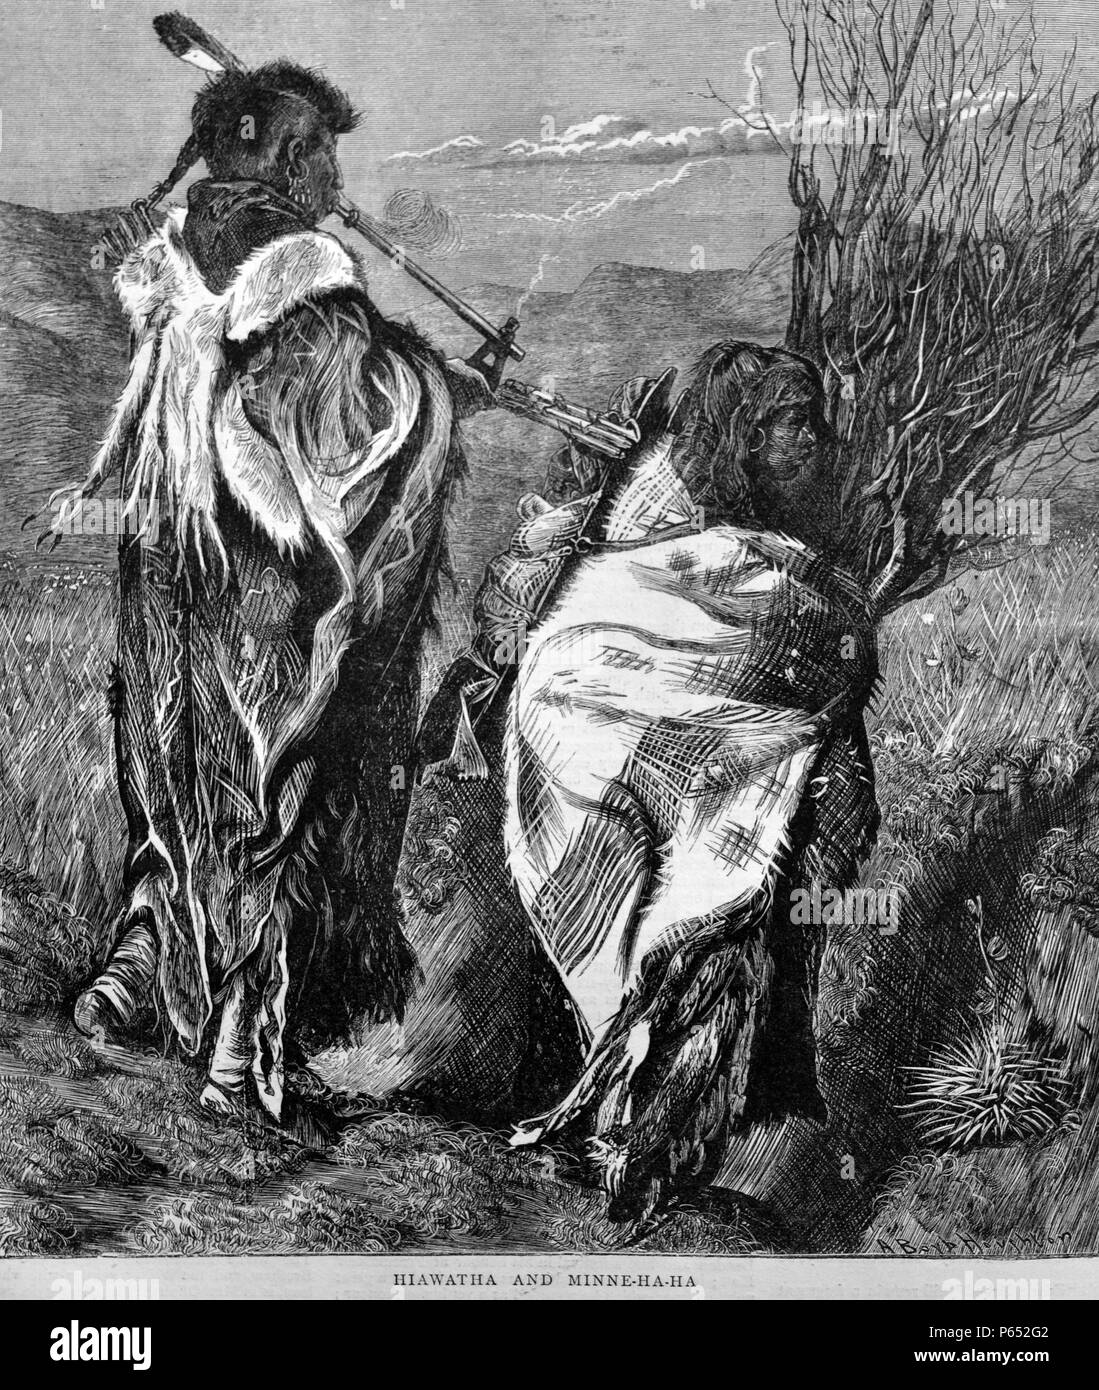 Incisione raffigura due nativi americani, Hiawatha e Minne.Ha.Ha. Hiawatha è visto il fumo attraverso una tubazione lunga. Datata 1870 Foto Stock